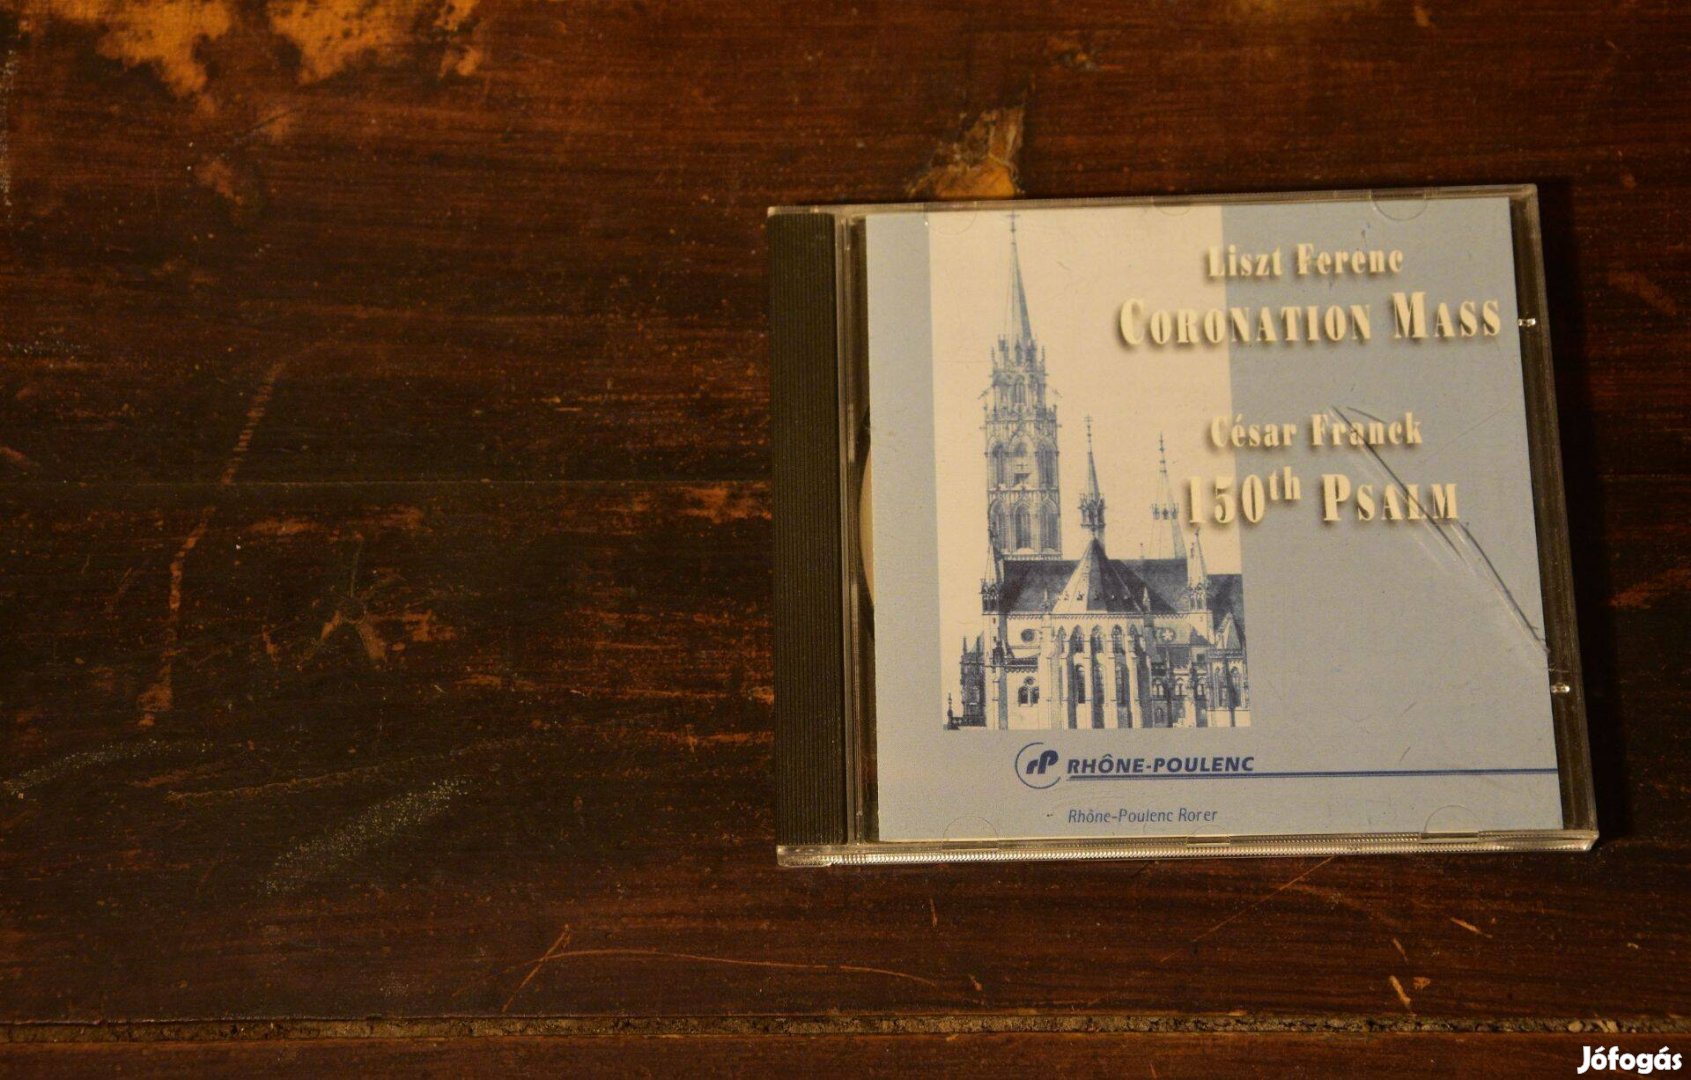 CD Liszt Ferenc Coronation Mass